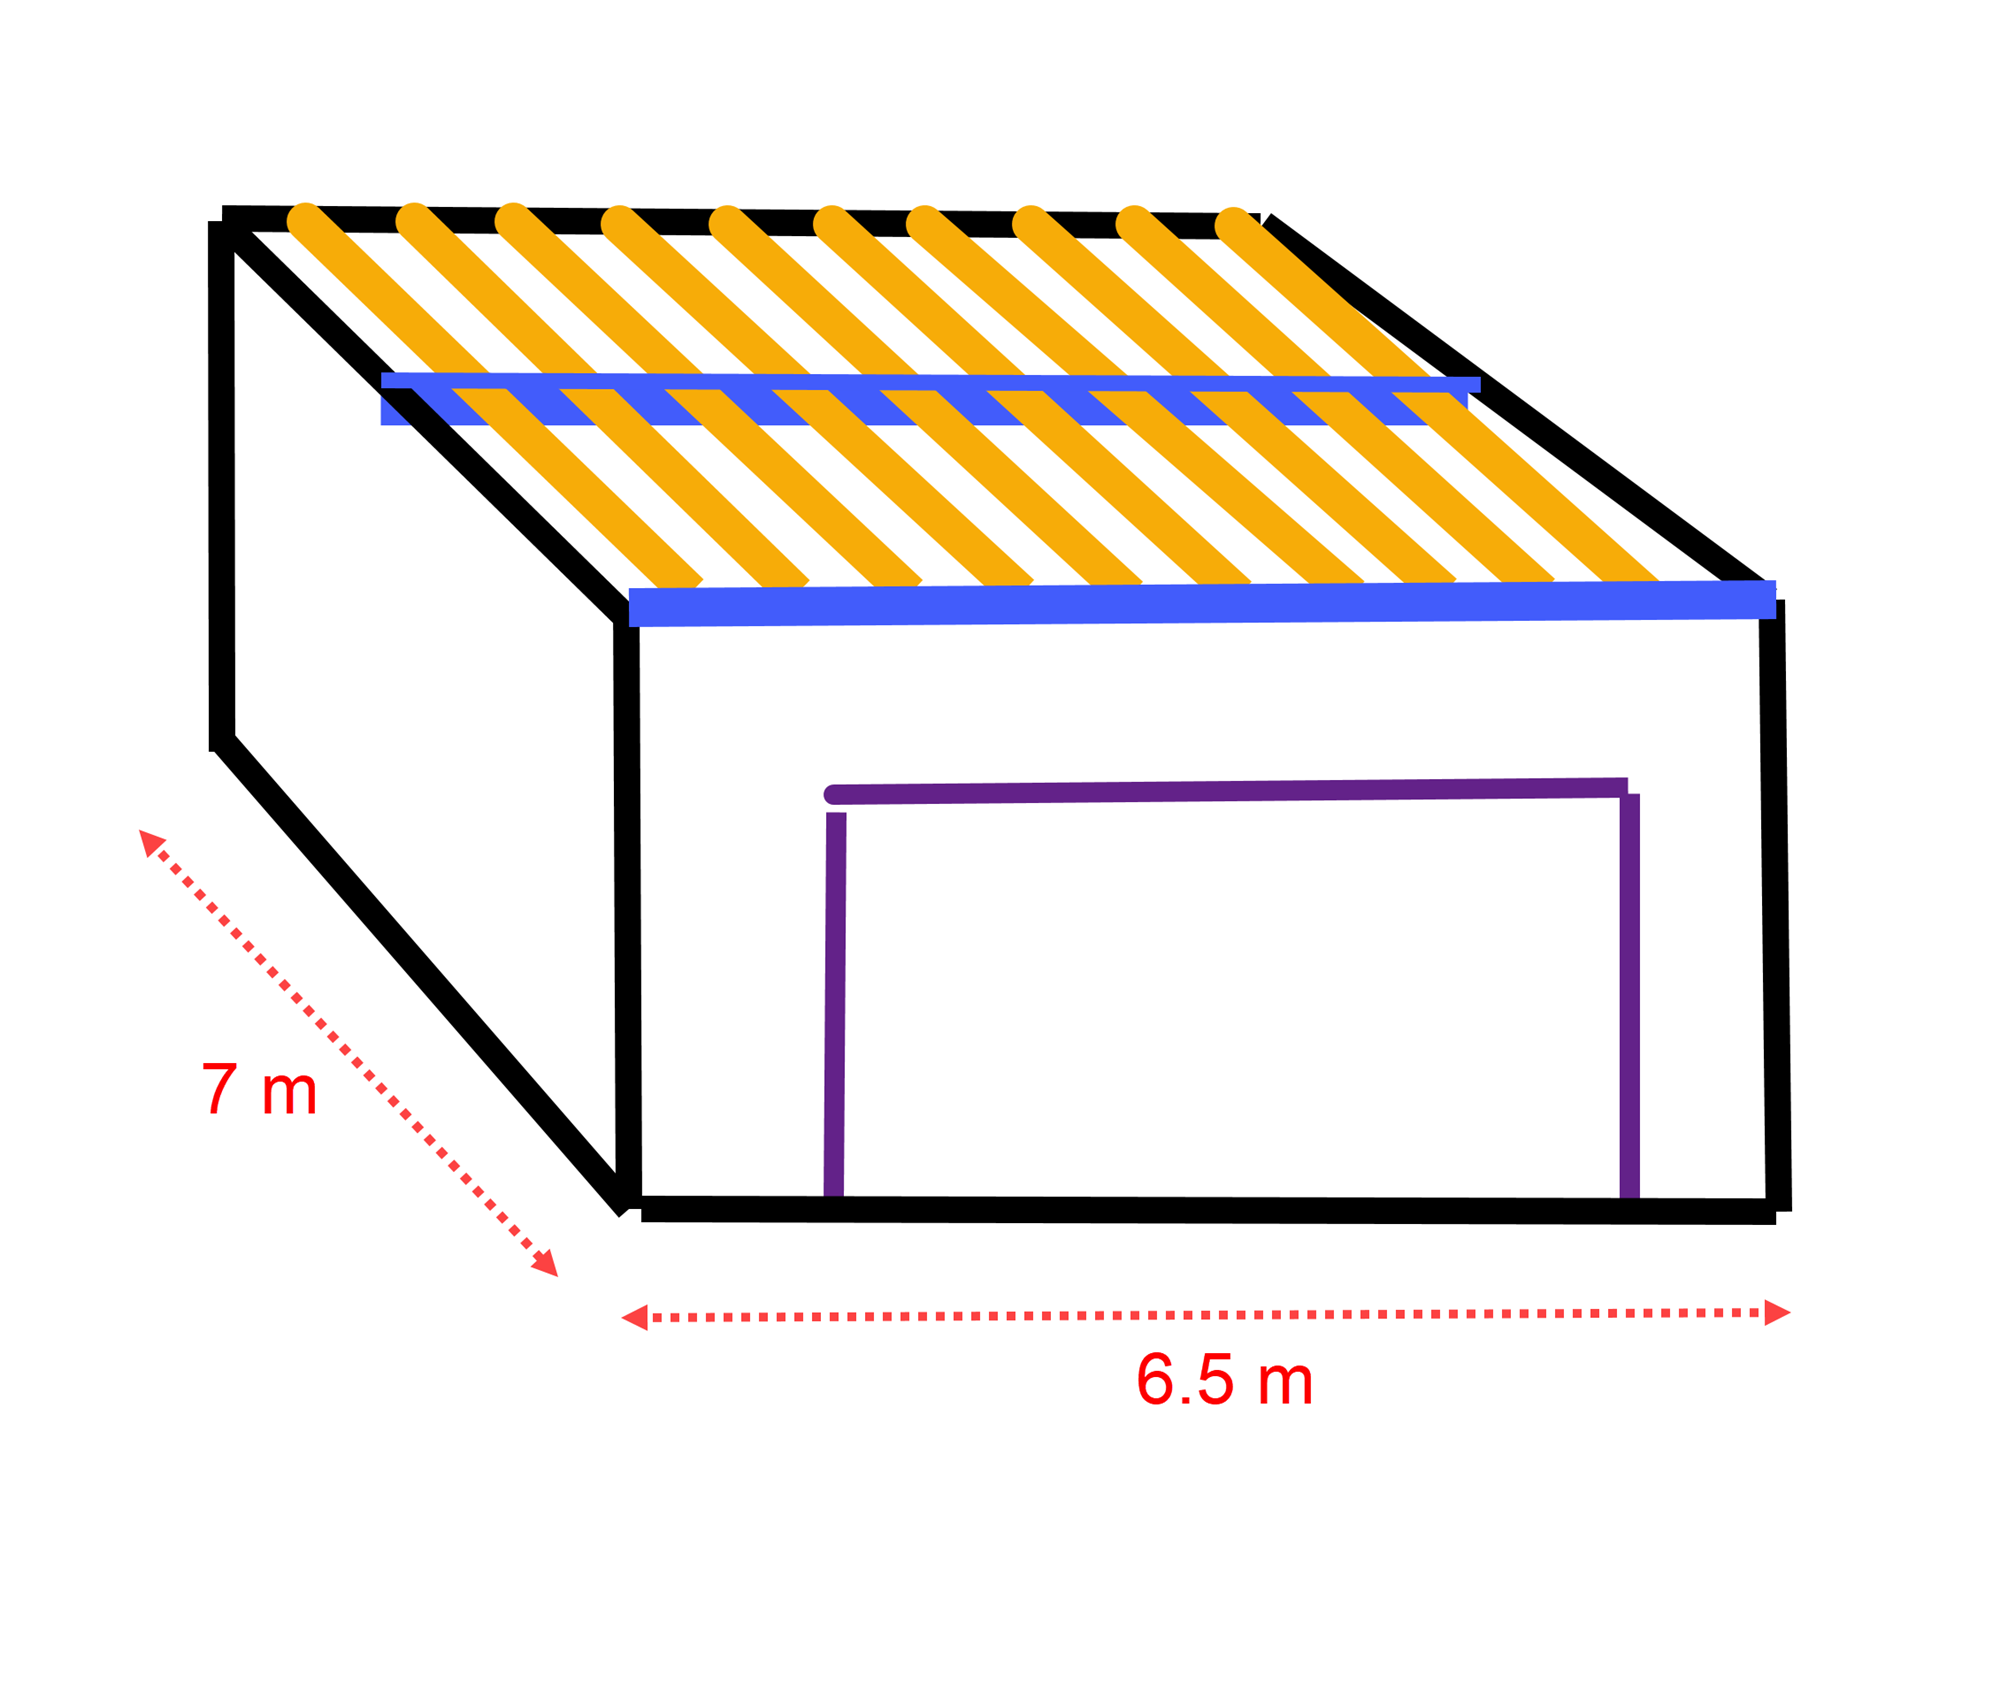 Funkis garasje med flatt tak (hvordan bygge taket?) - 7ebe2dbdcf6642e79721fc4672cc2979.png - Elme